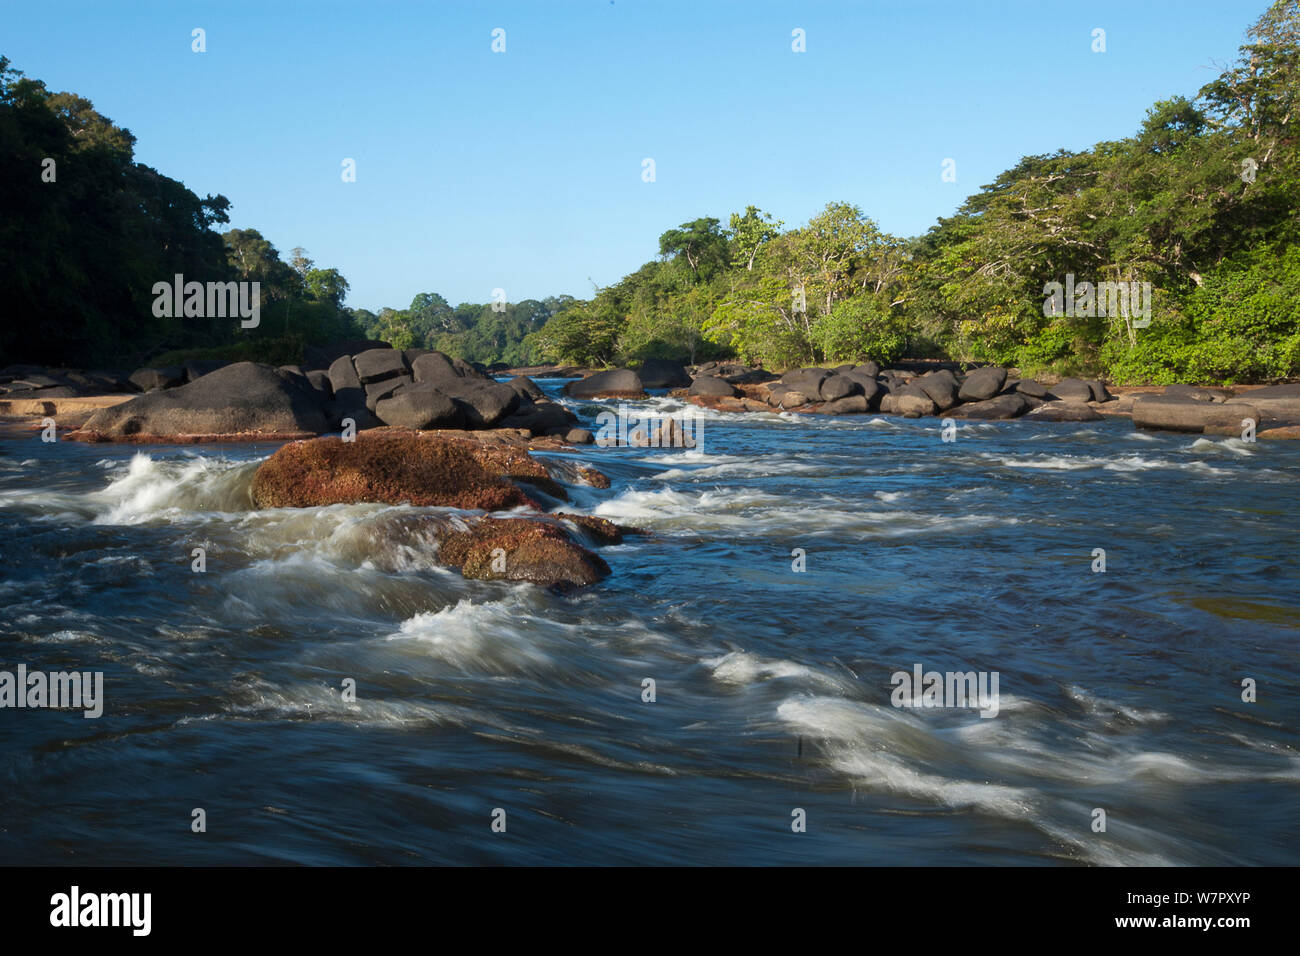 Gran Rio flowing through the Awadan Rapids. Central Suriname, September. Stock Photo